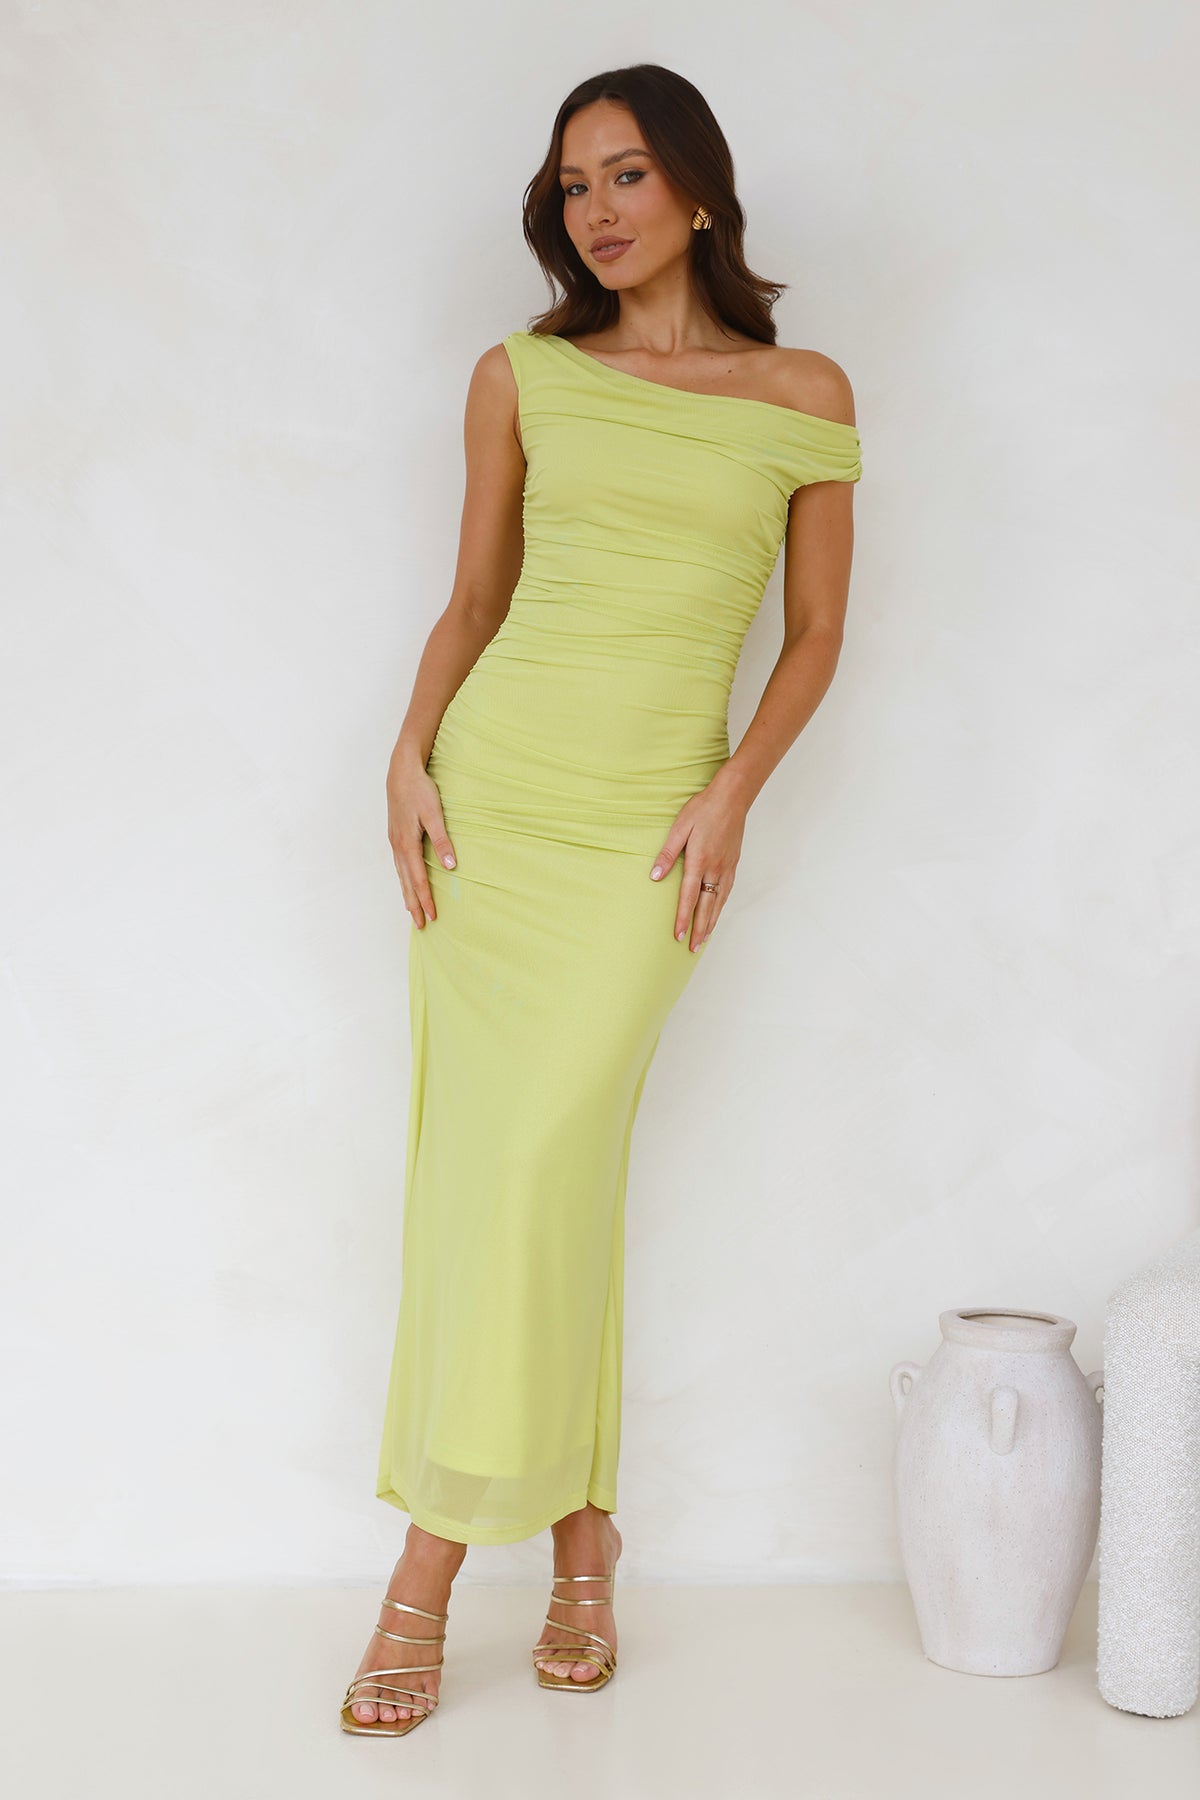 Shop Formal Dress Lime Dress Maxi Shoulder Off Love Old